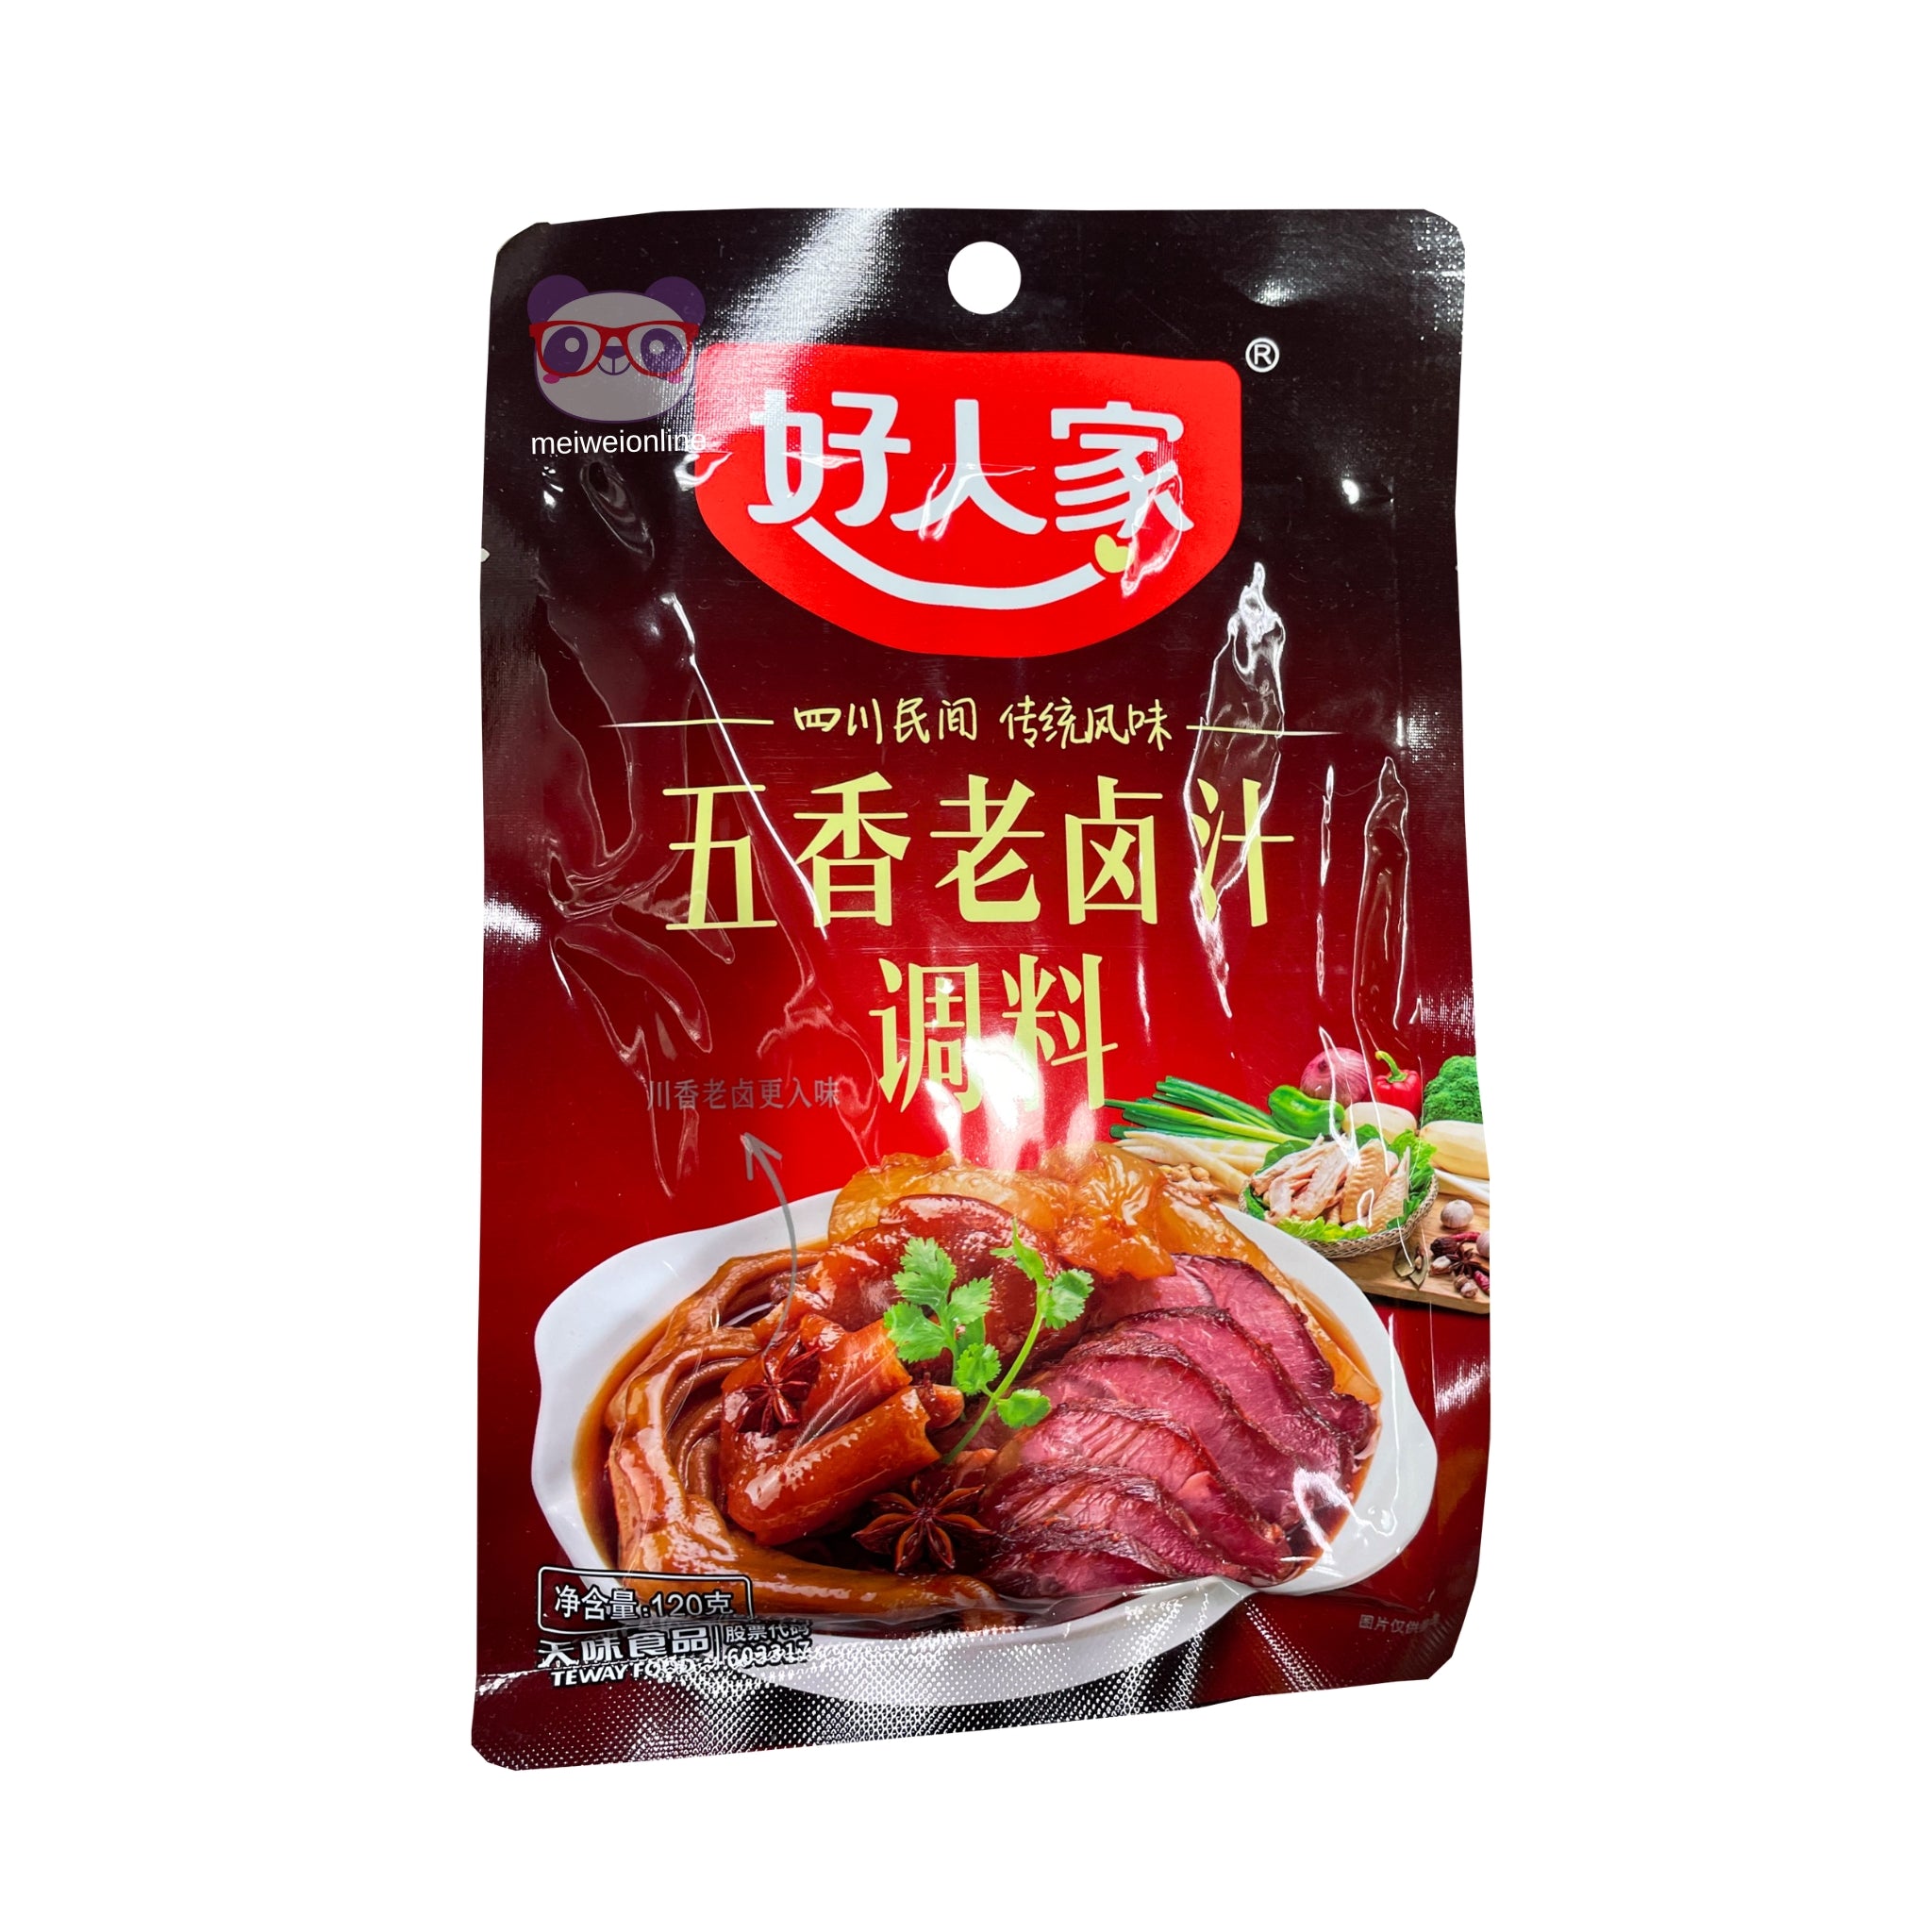 Tempero para marinada 5 especiarias Sichuan Teway 120g